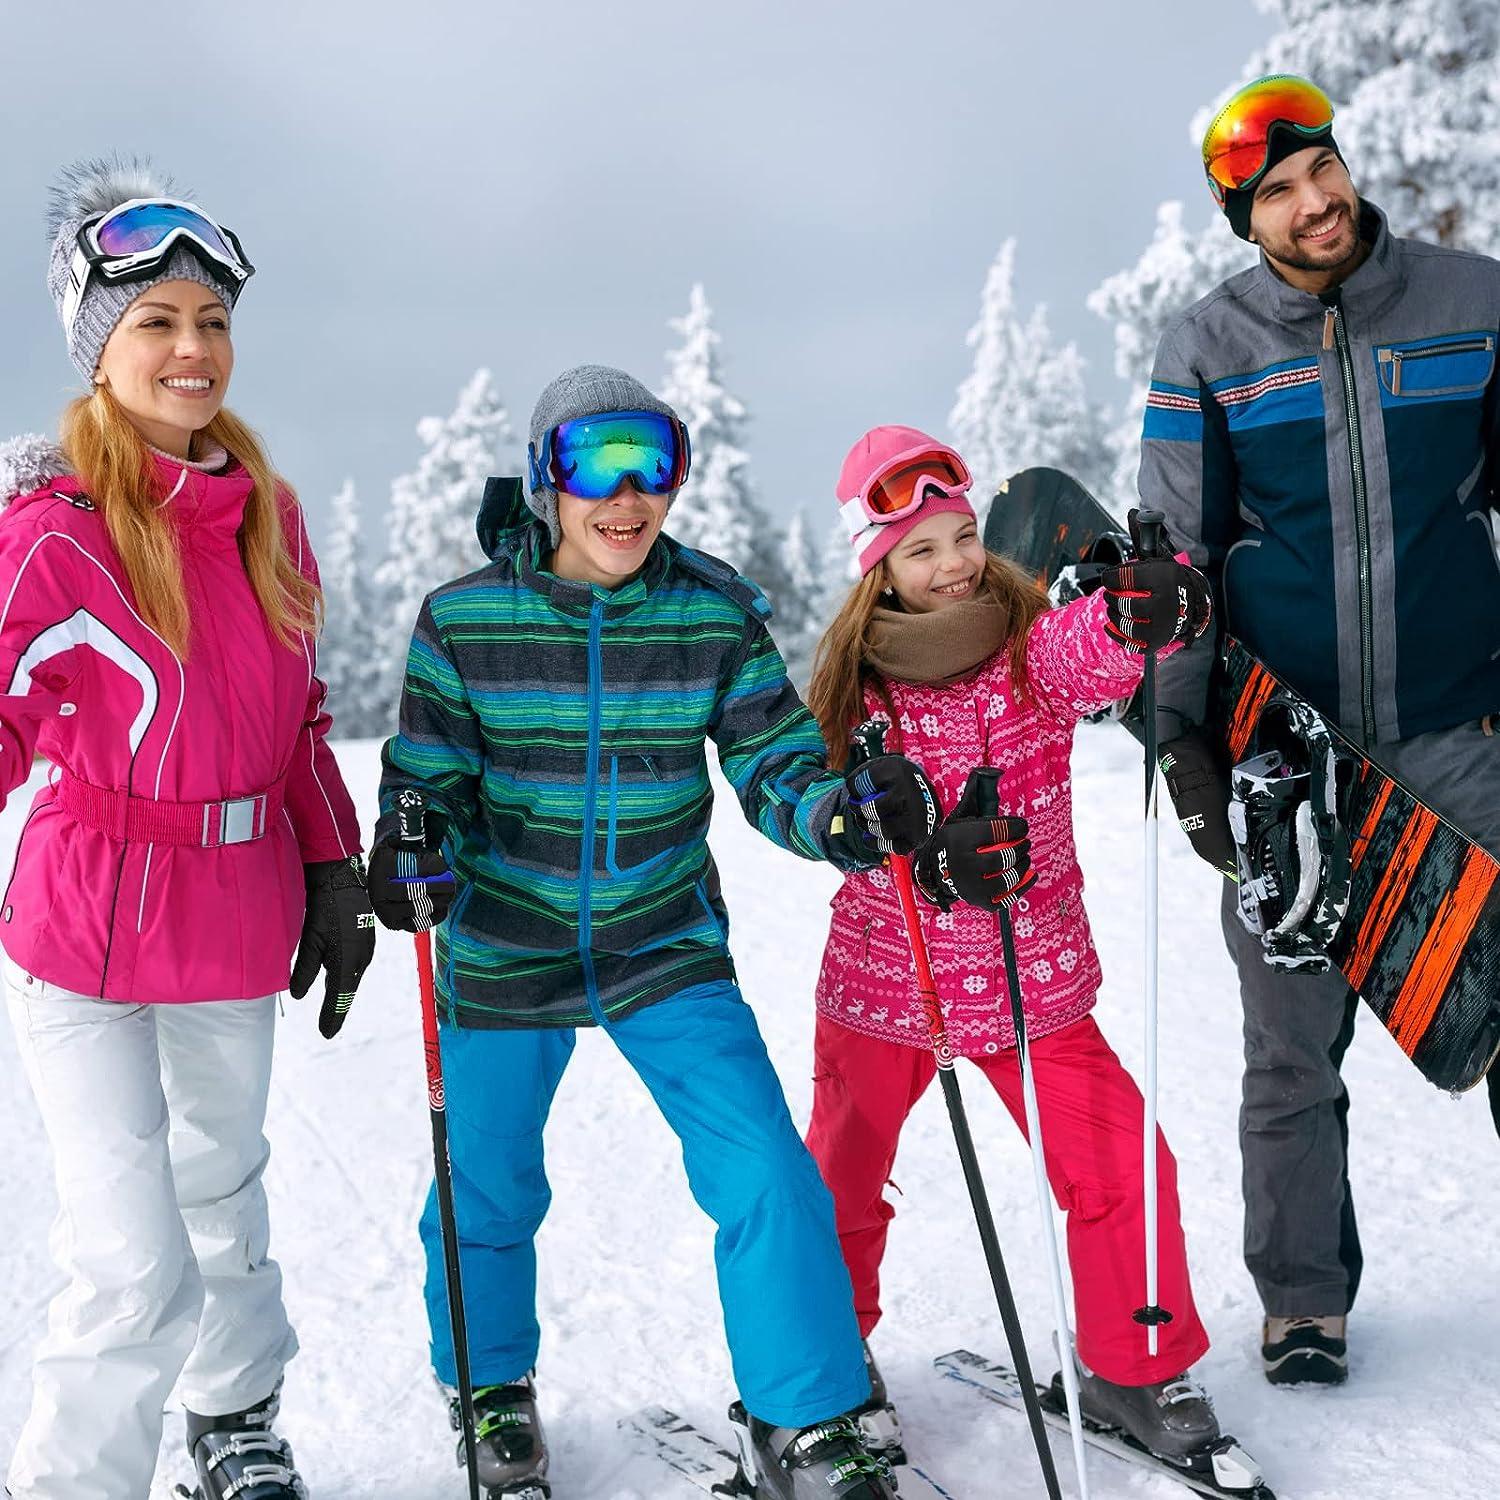 Bencailor 4 Pair Ski Gloves for Men Women Kids Snow Windproof